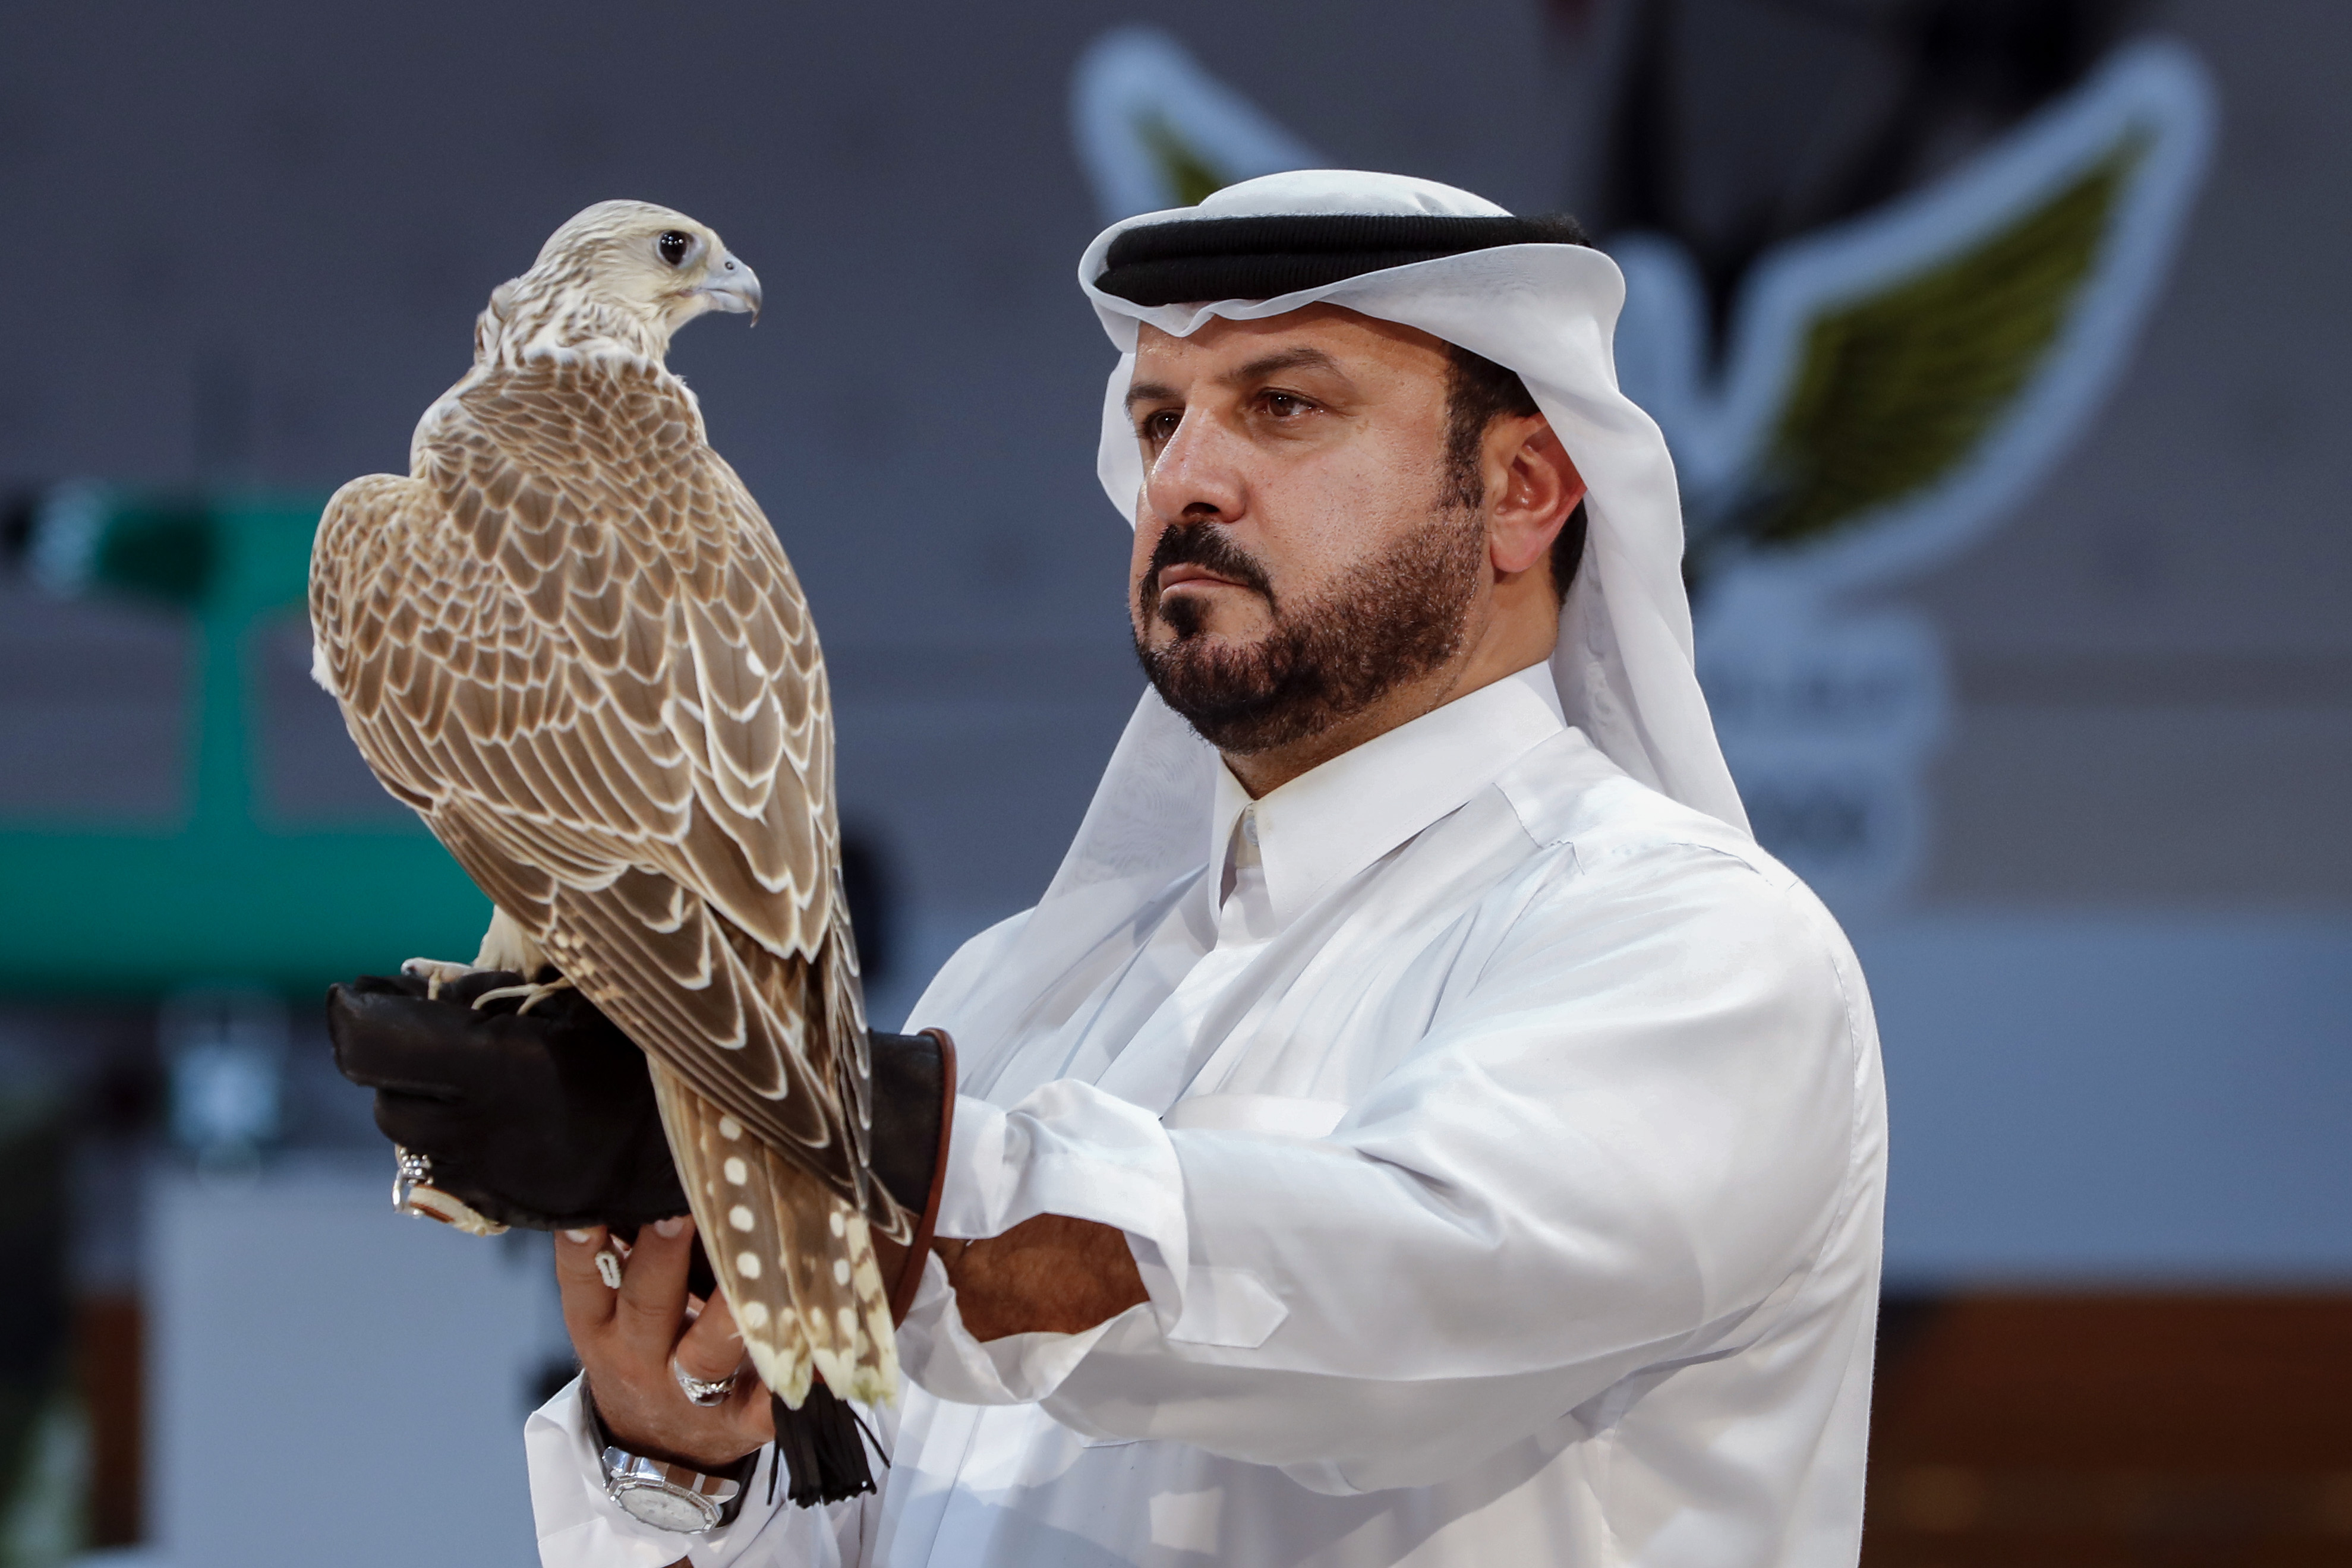 El halcón milenario de Qatar 2022: turismo, lujo y tradición